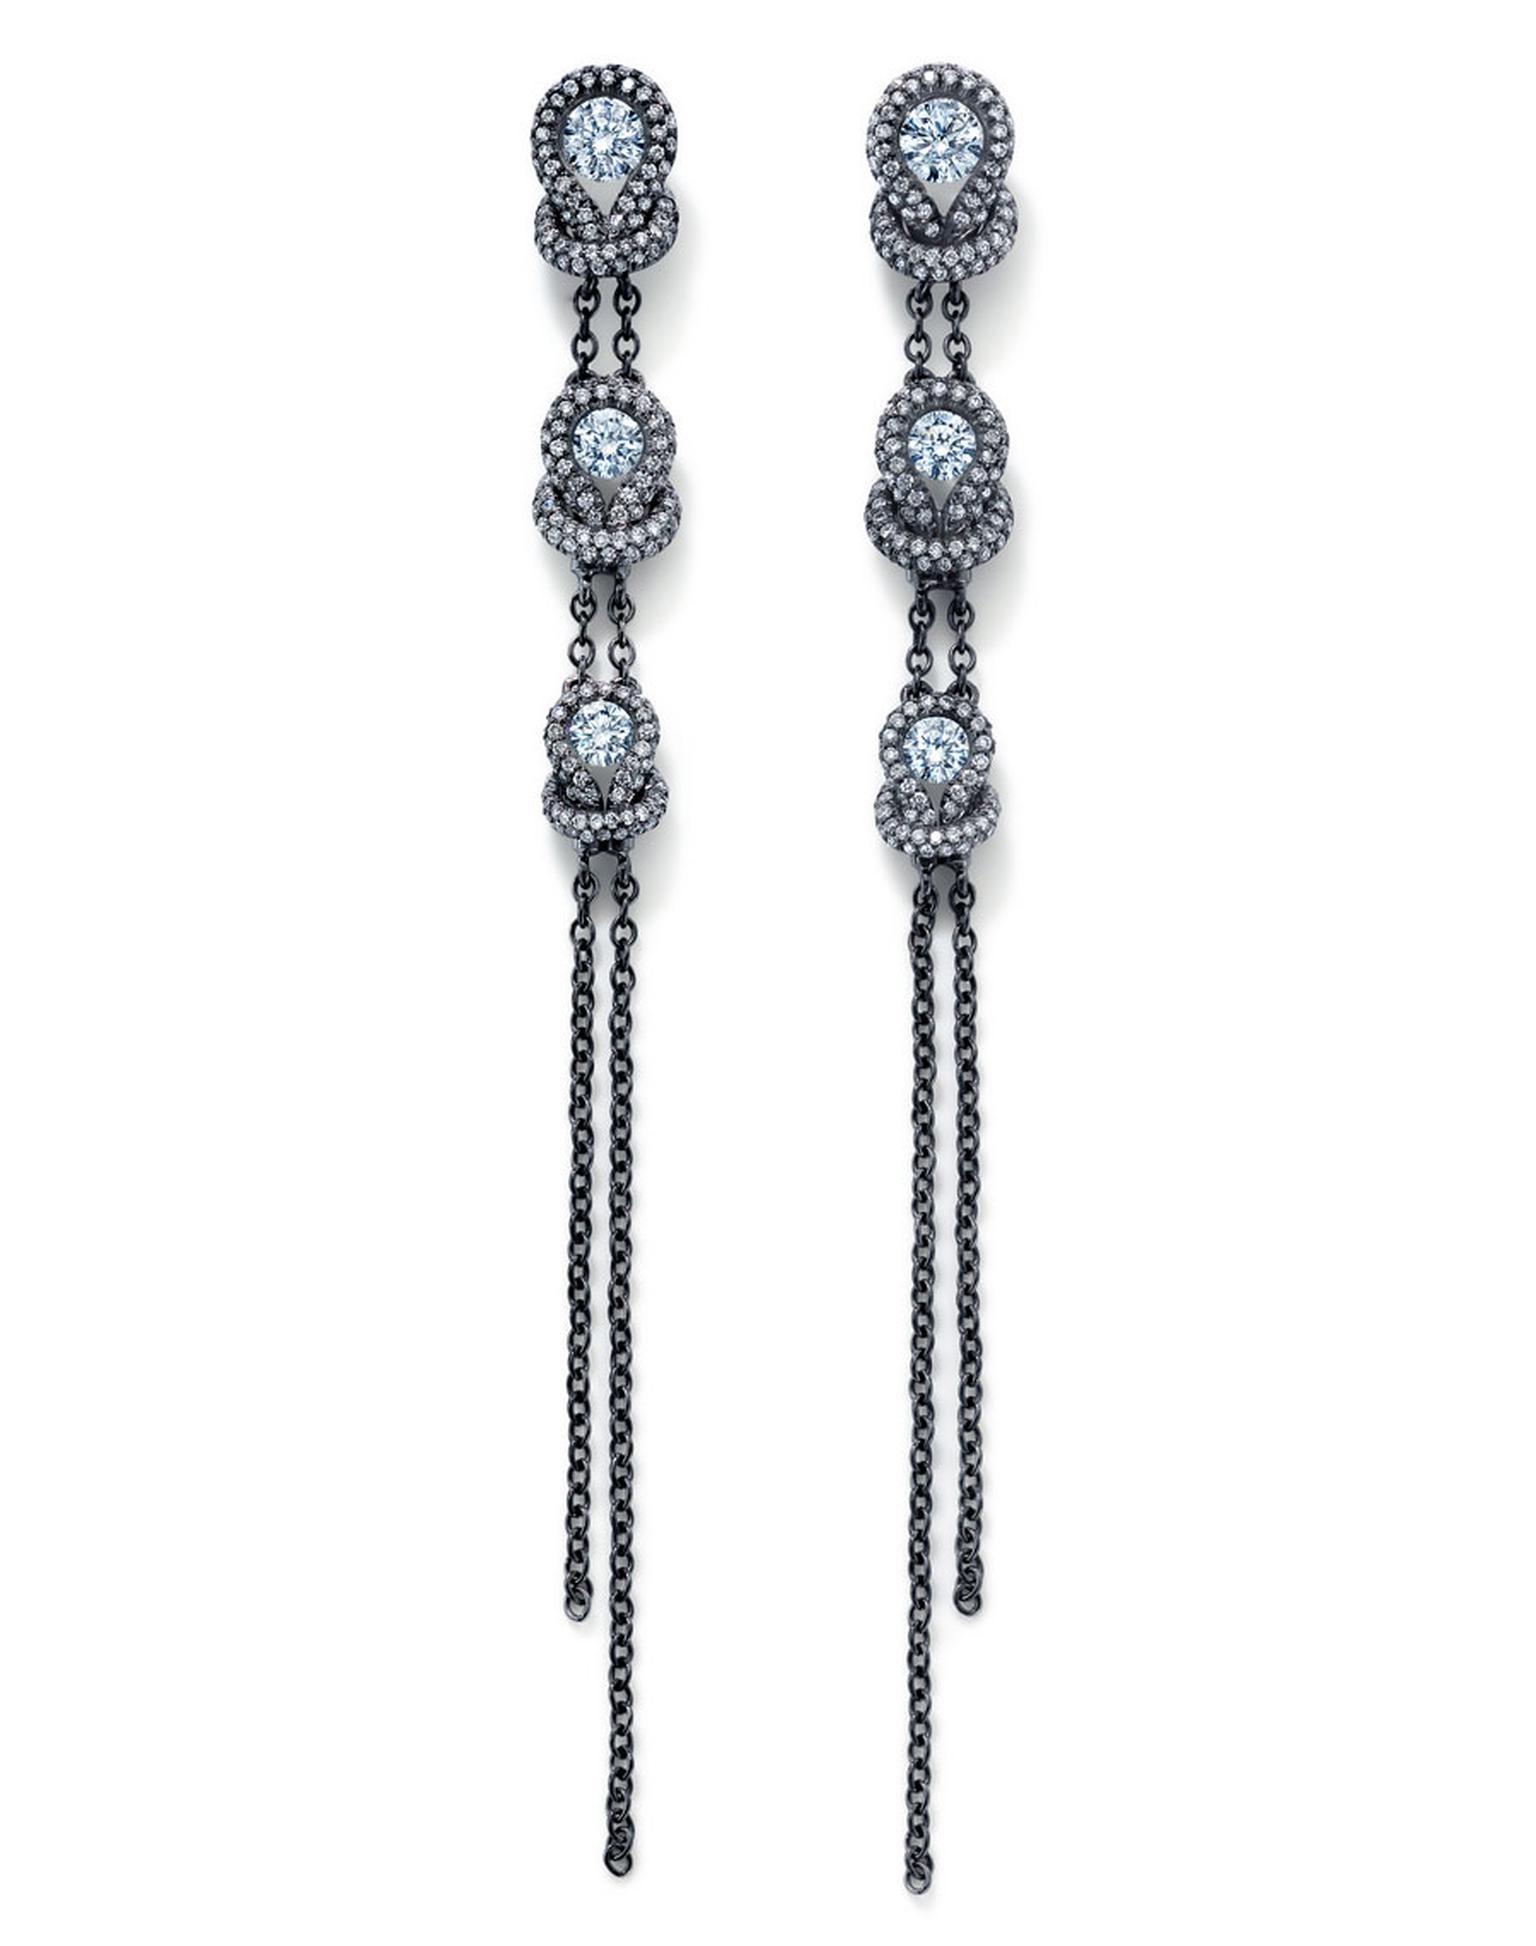 Norah-Jones-wore-Forevermark-Encordia-earrings.jpg